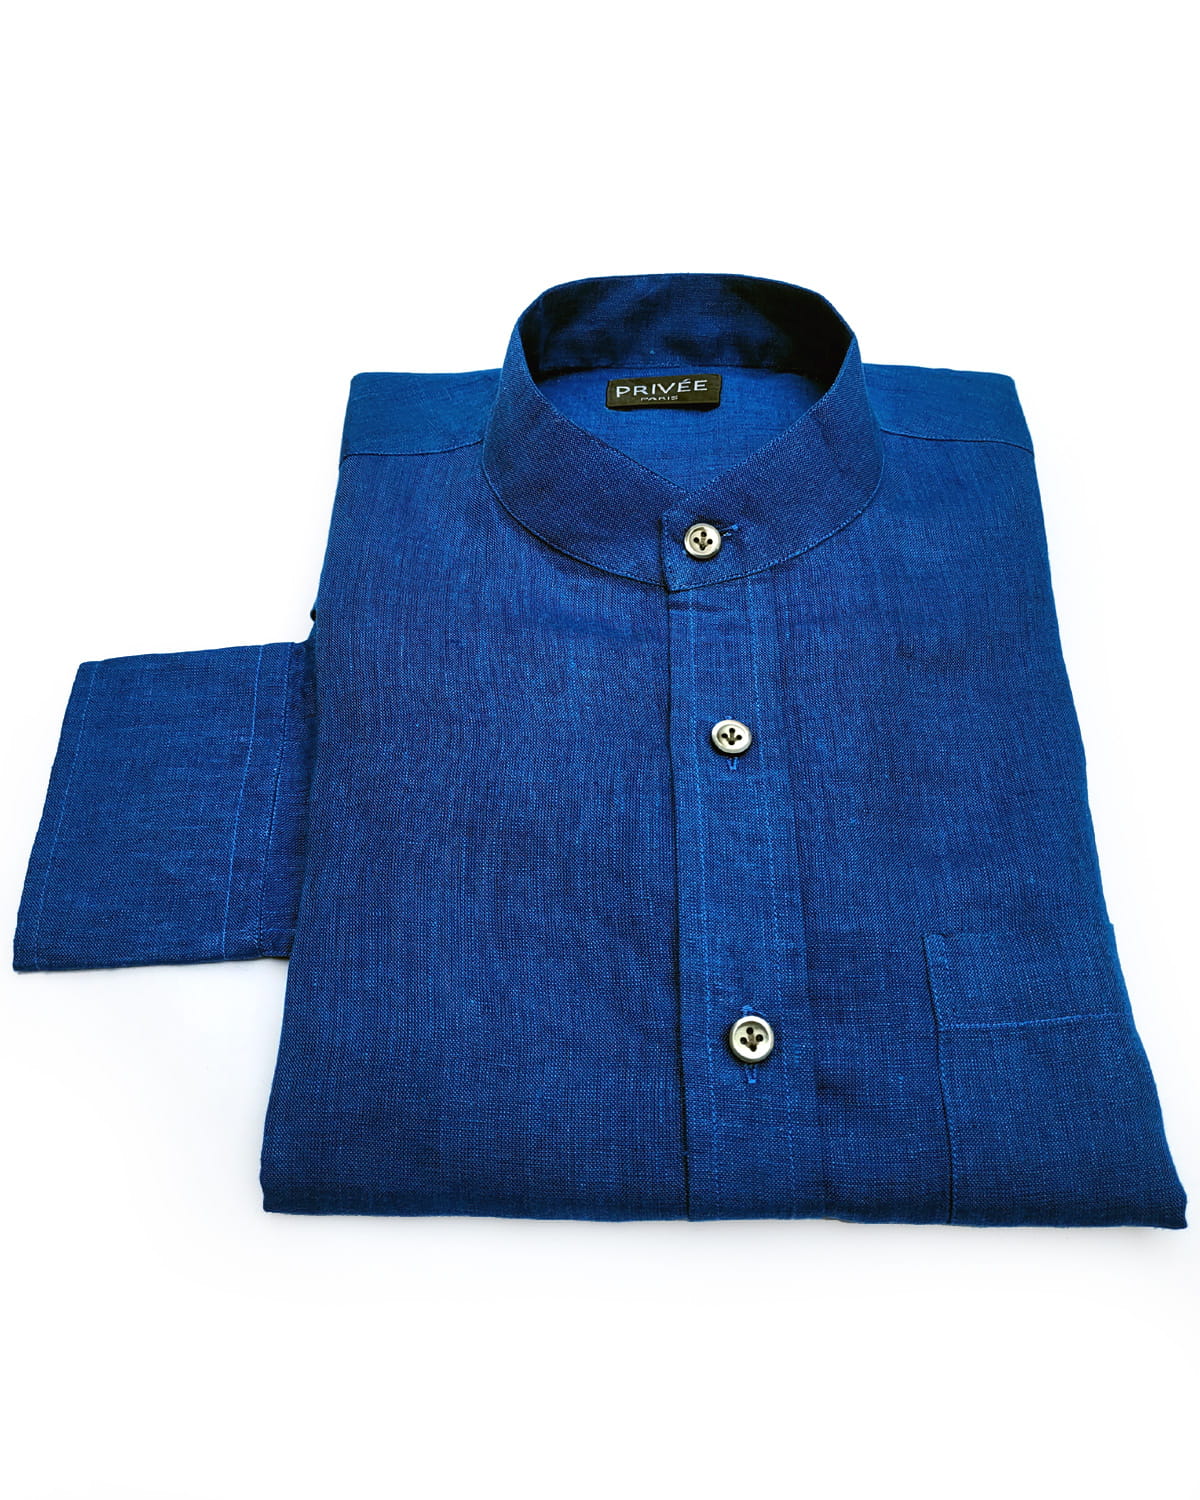 admiral blue linen shirt India